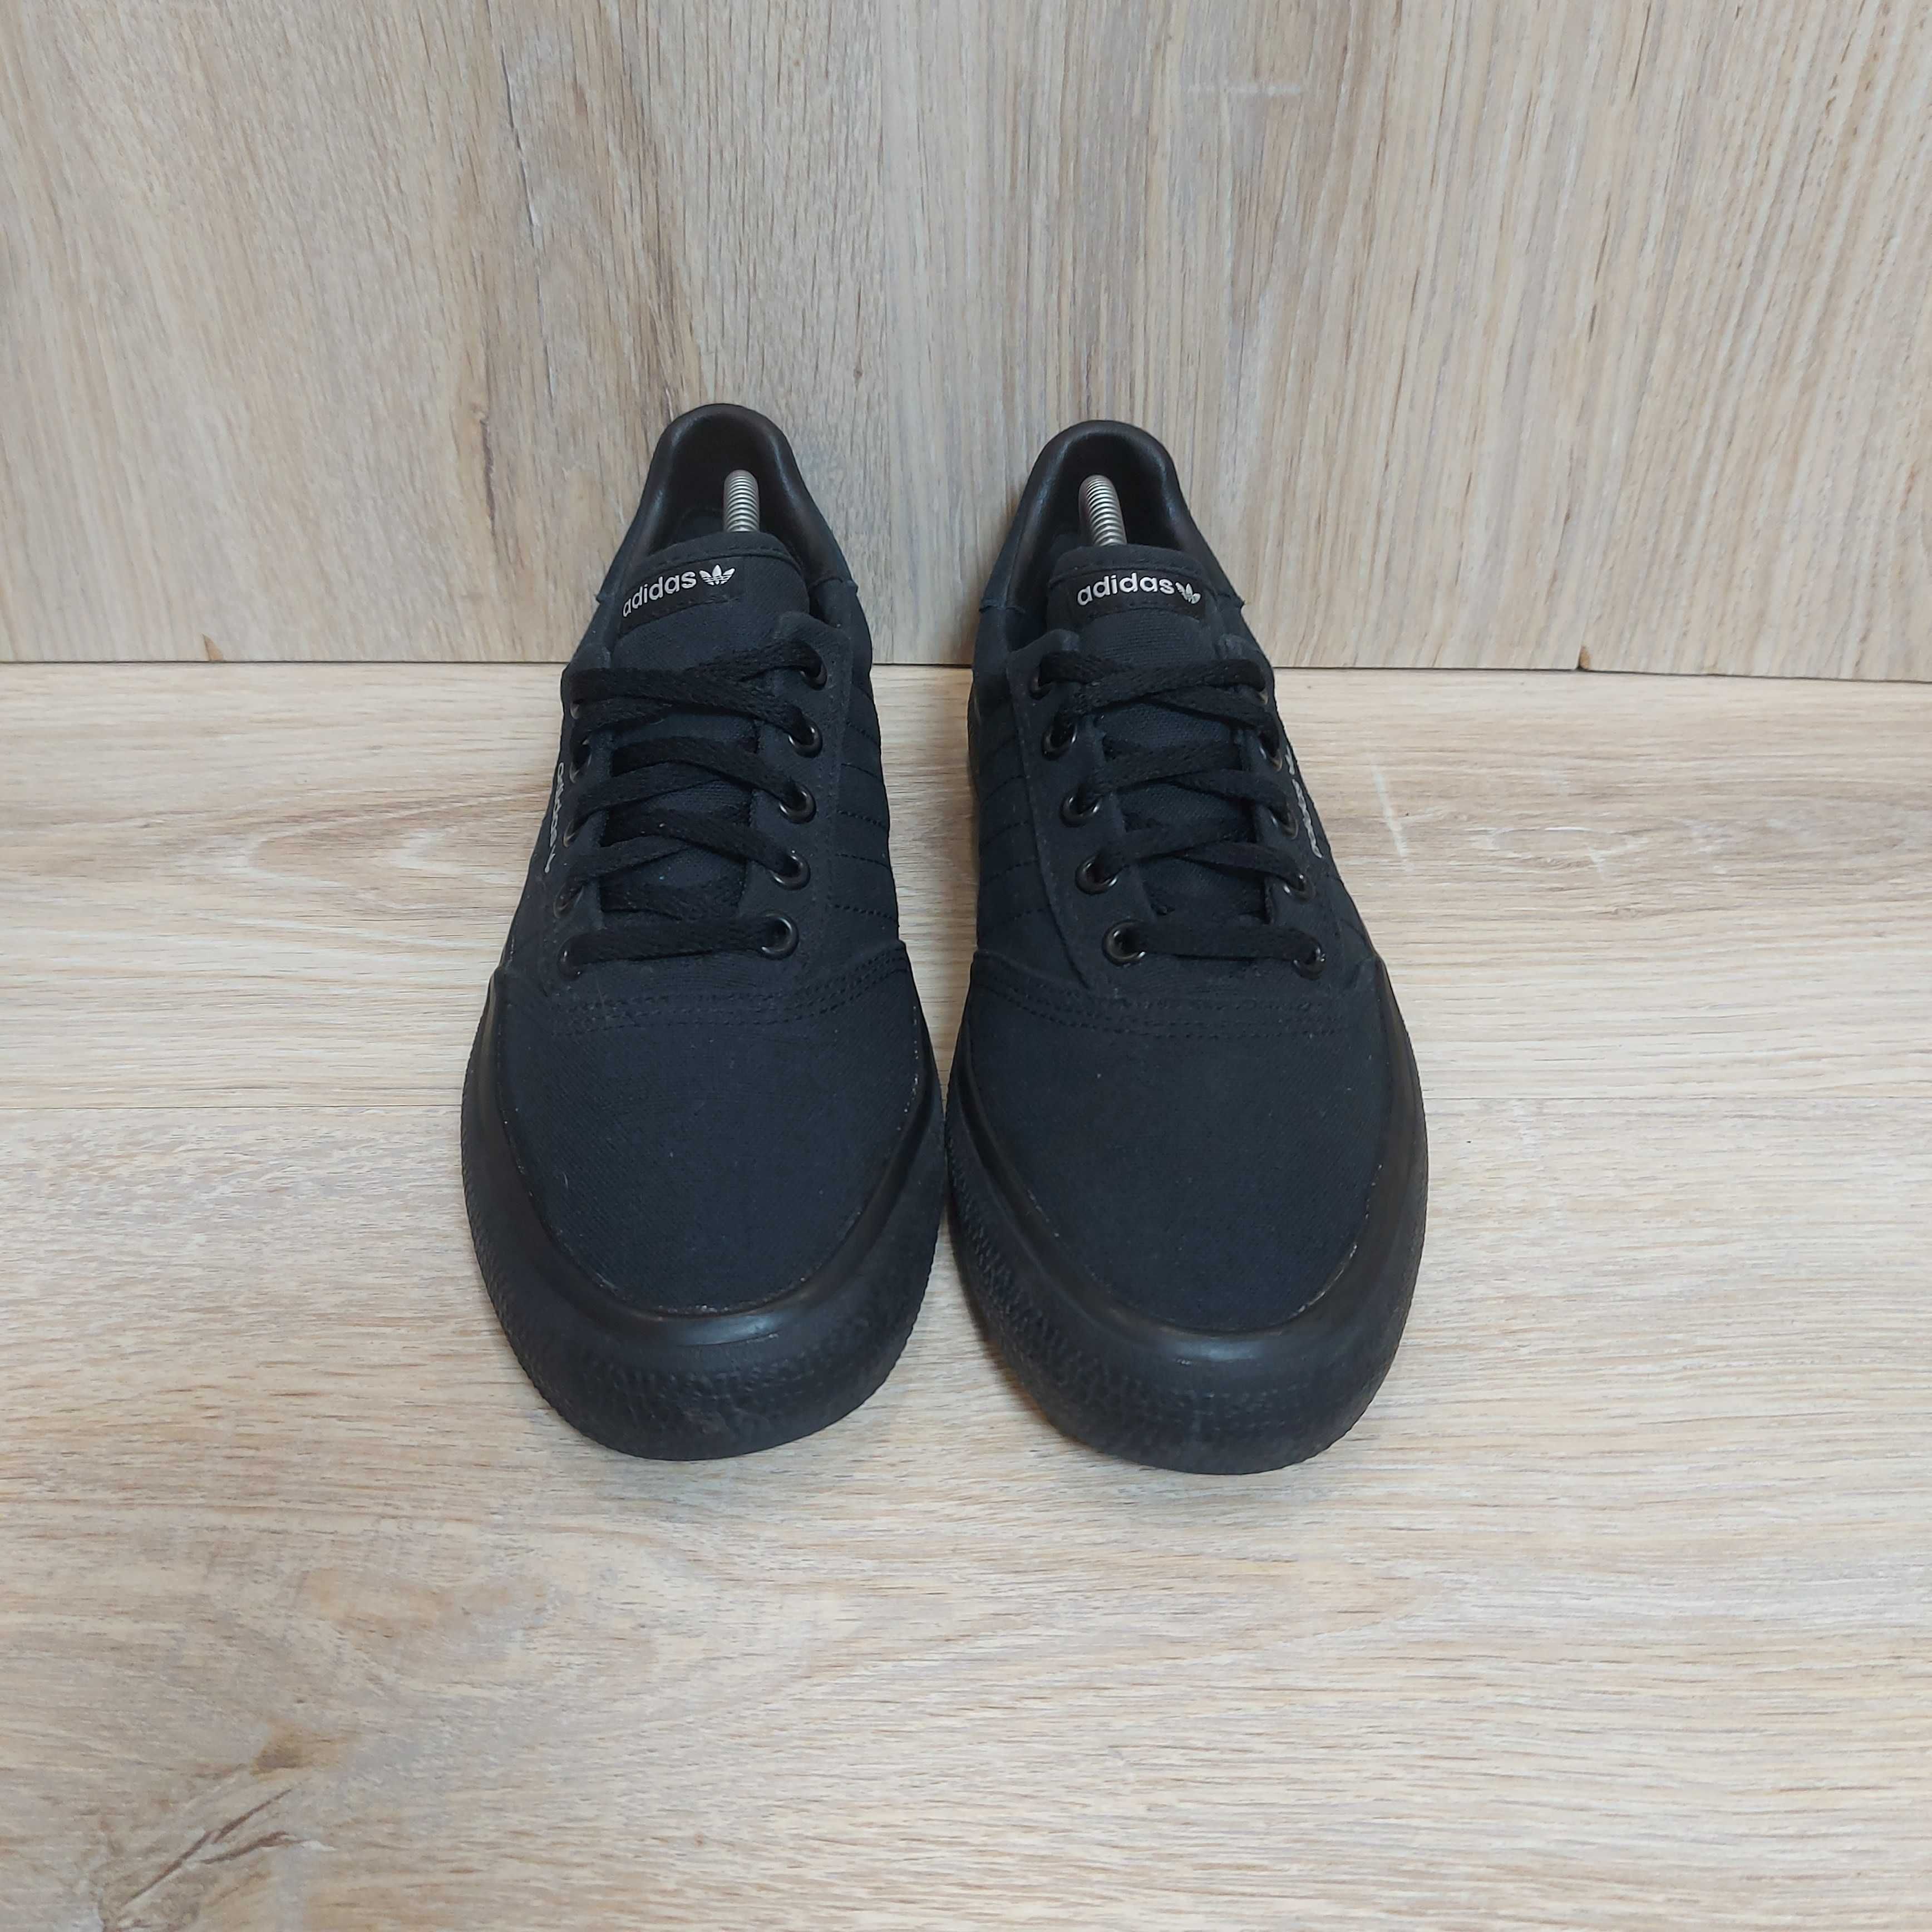 Кроссовки Adidas 3MC Vulc Skate Black оригинал кеды